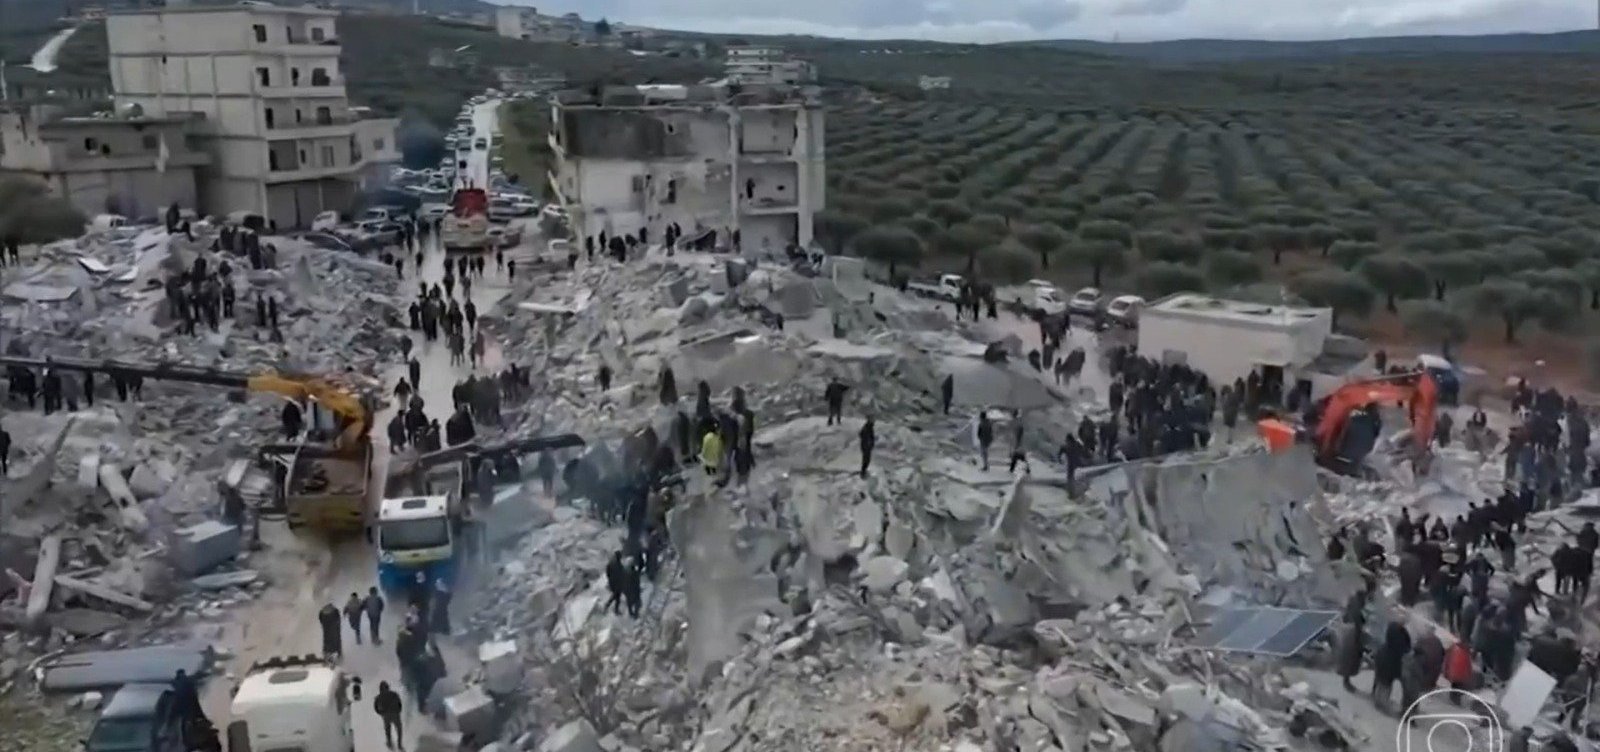 Mortes em terremoto na Turquia e na Síria ultrapassam 7 mil